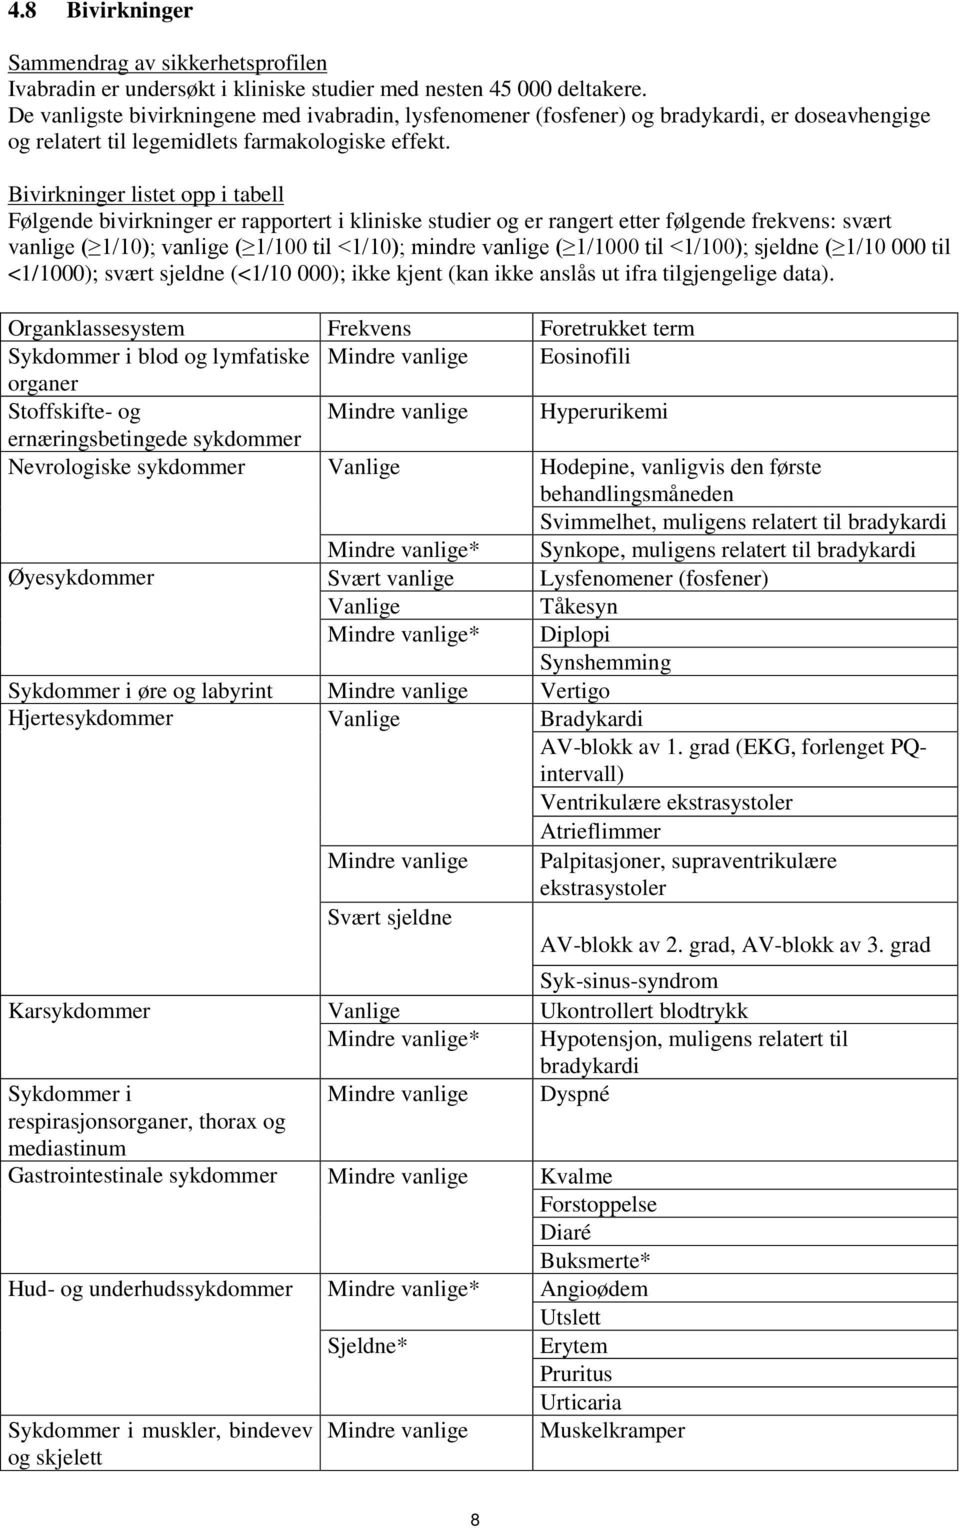 Bivirkninger listet opp i tabell Følgende bivirkninger er rapportert i kliniske studier og er rangert etter følgende frekvens: svært vanlige ( 1/10); vanlige ( 1/100 til <1/10); mindre vanlige (